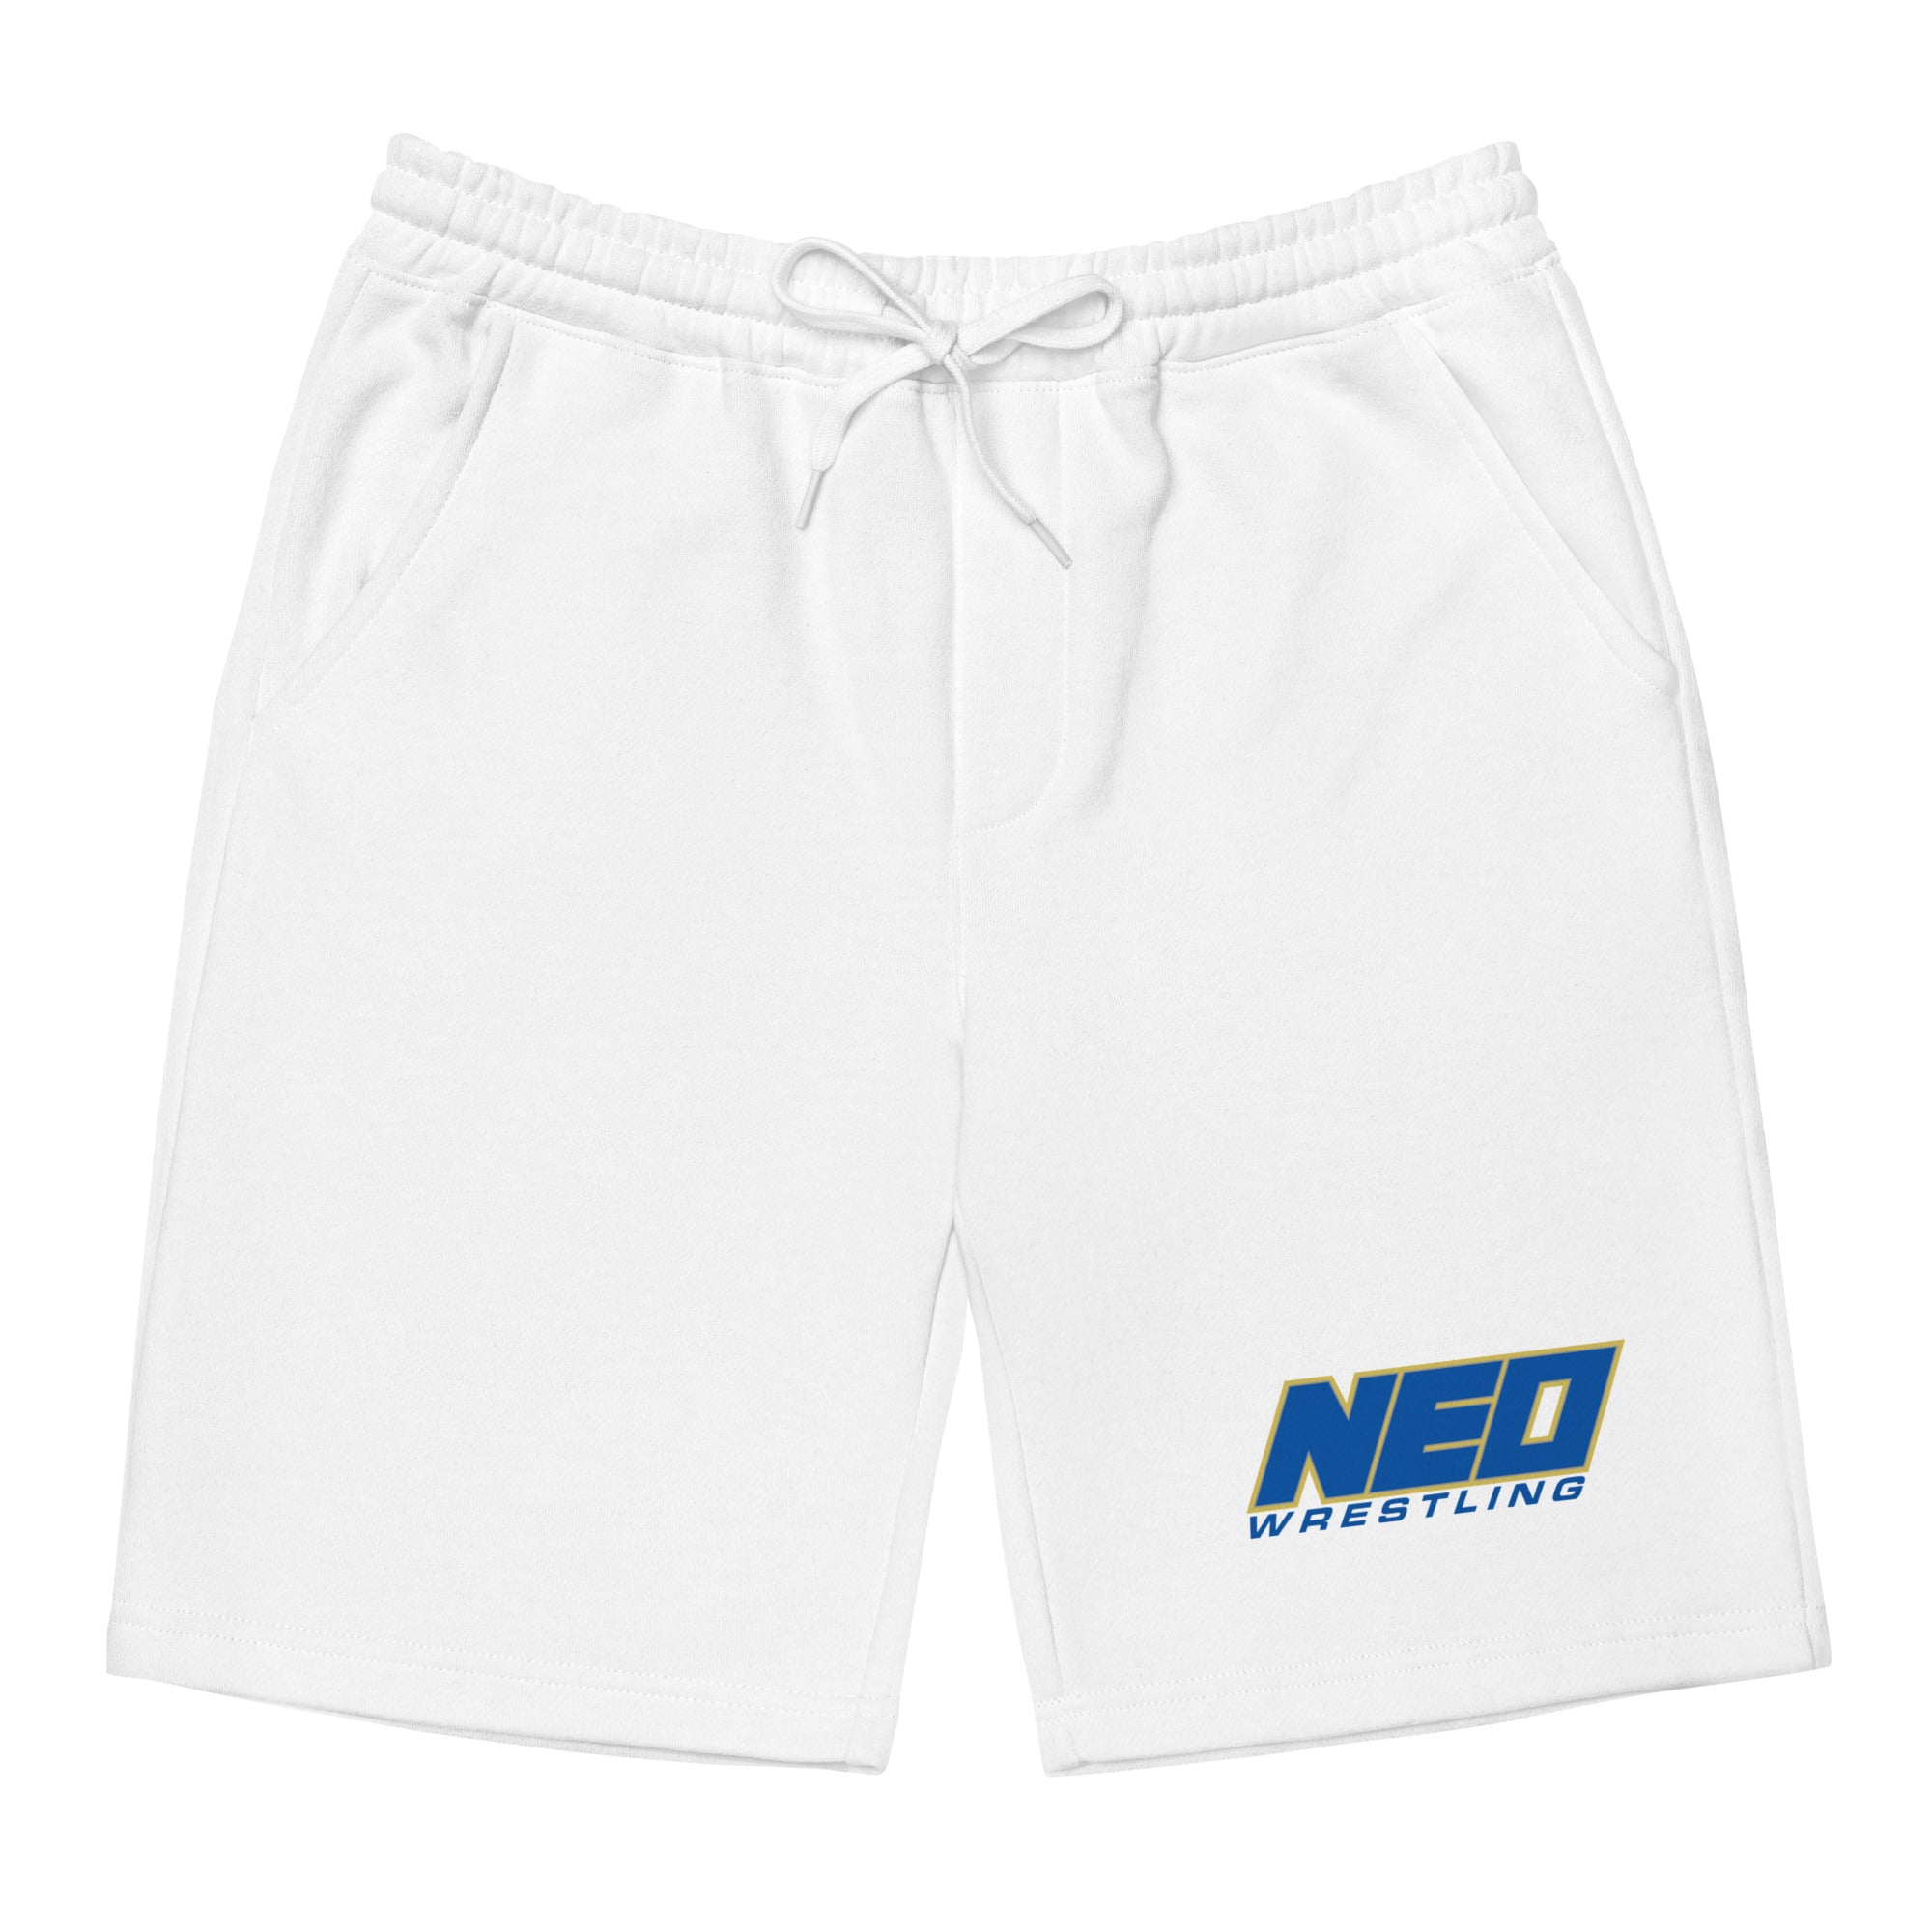 Neo Wrestling Men's Fleece Shorts